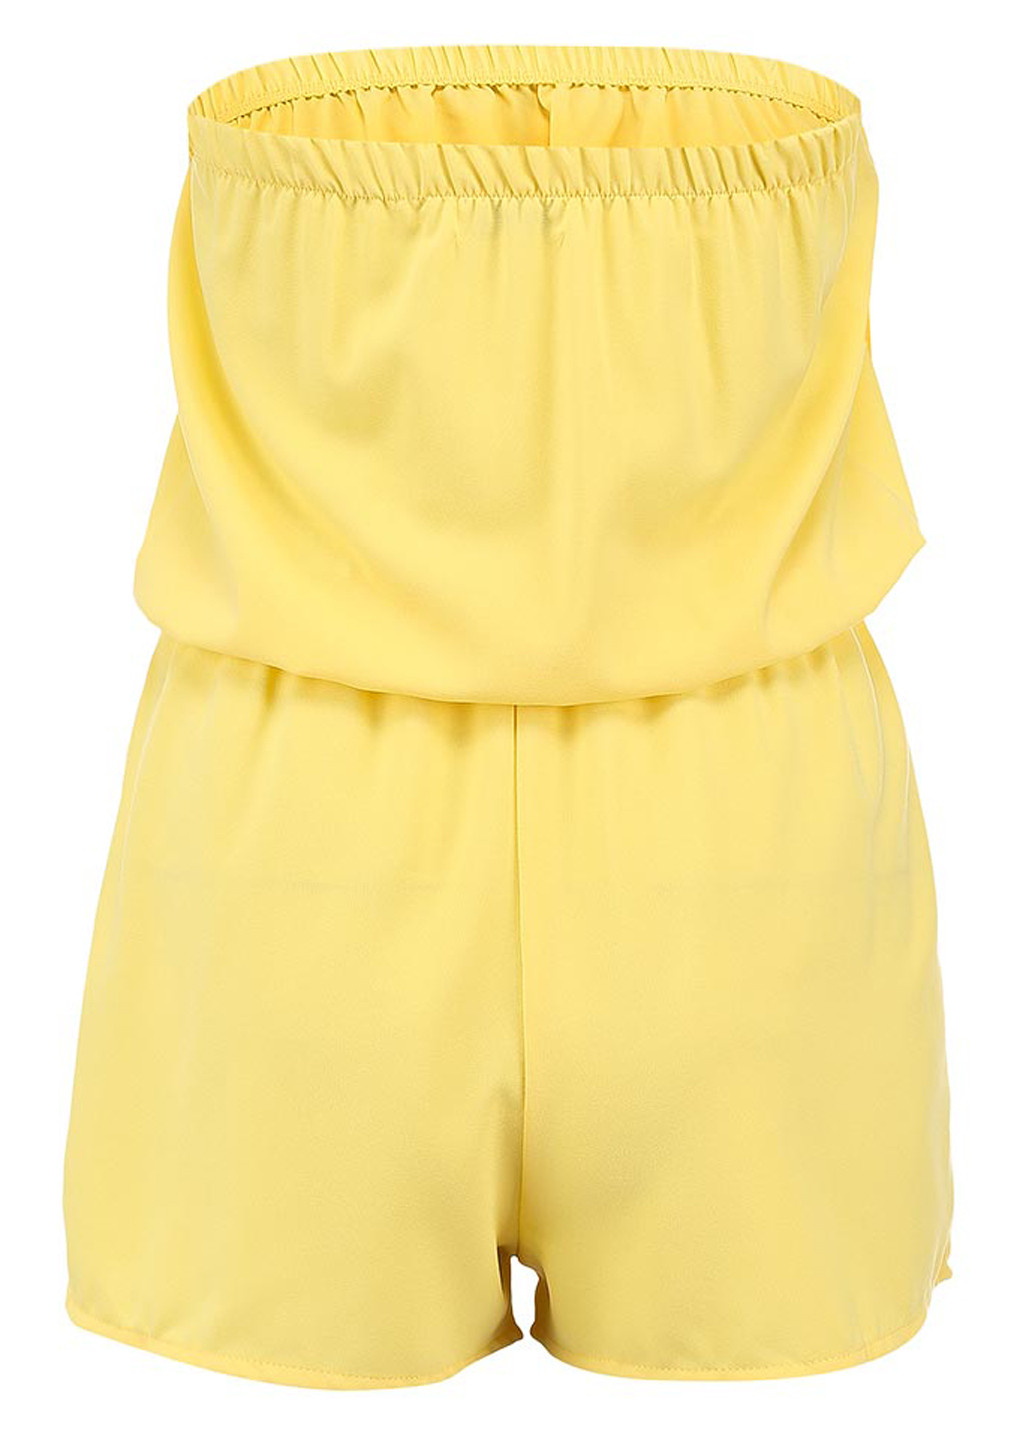 Комбинезон Glamorous комбинезон-шорты однотонный жёлтый кэжуал